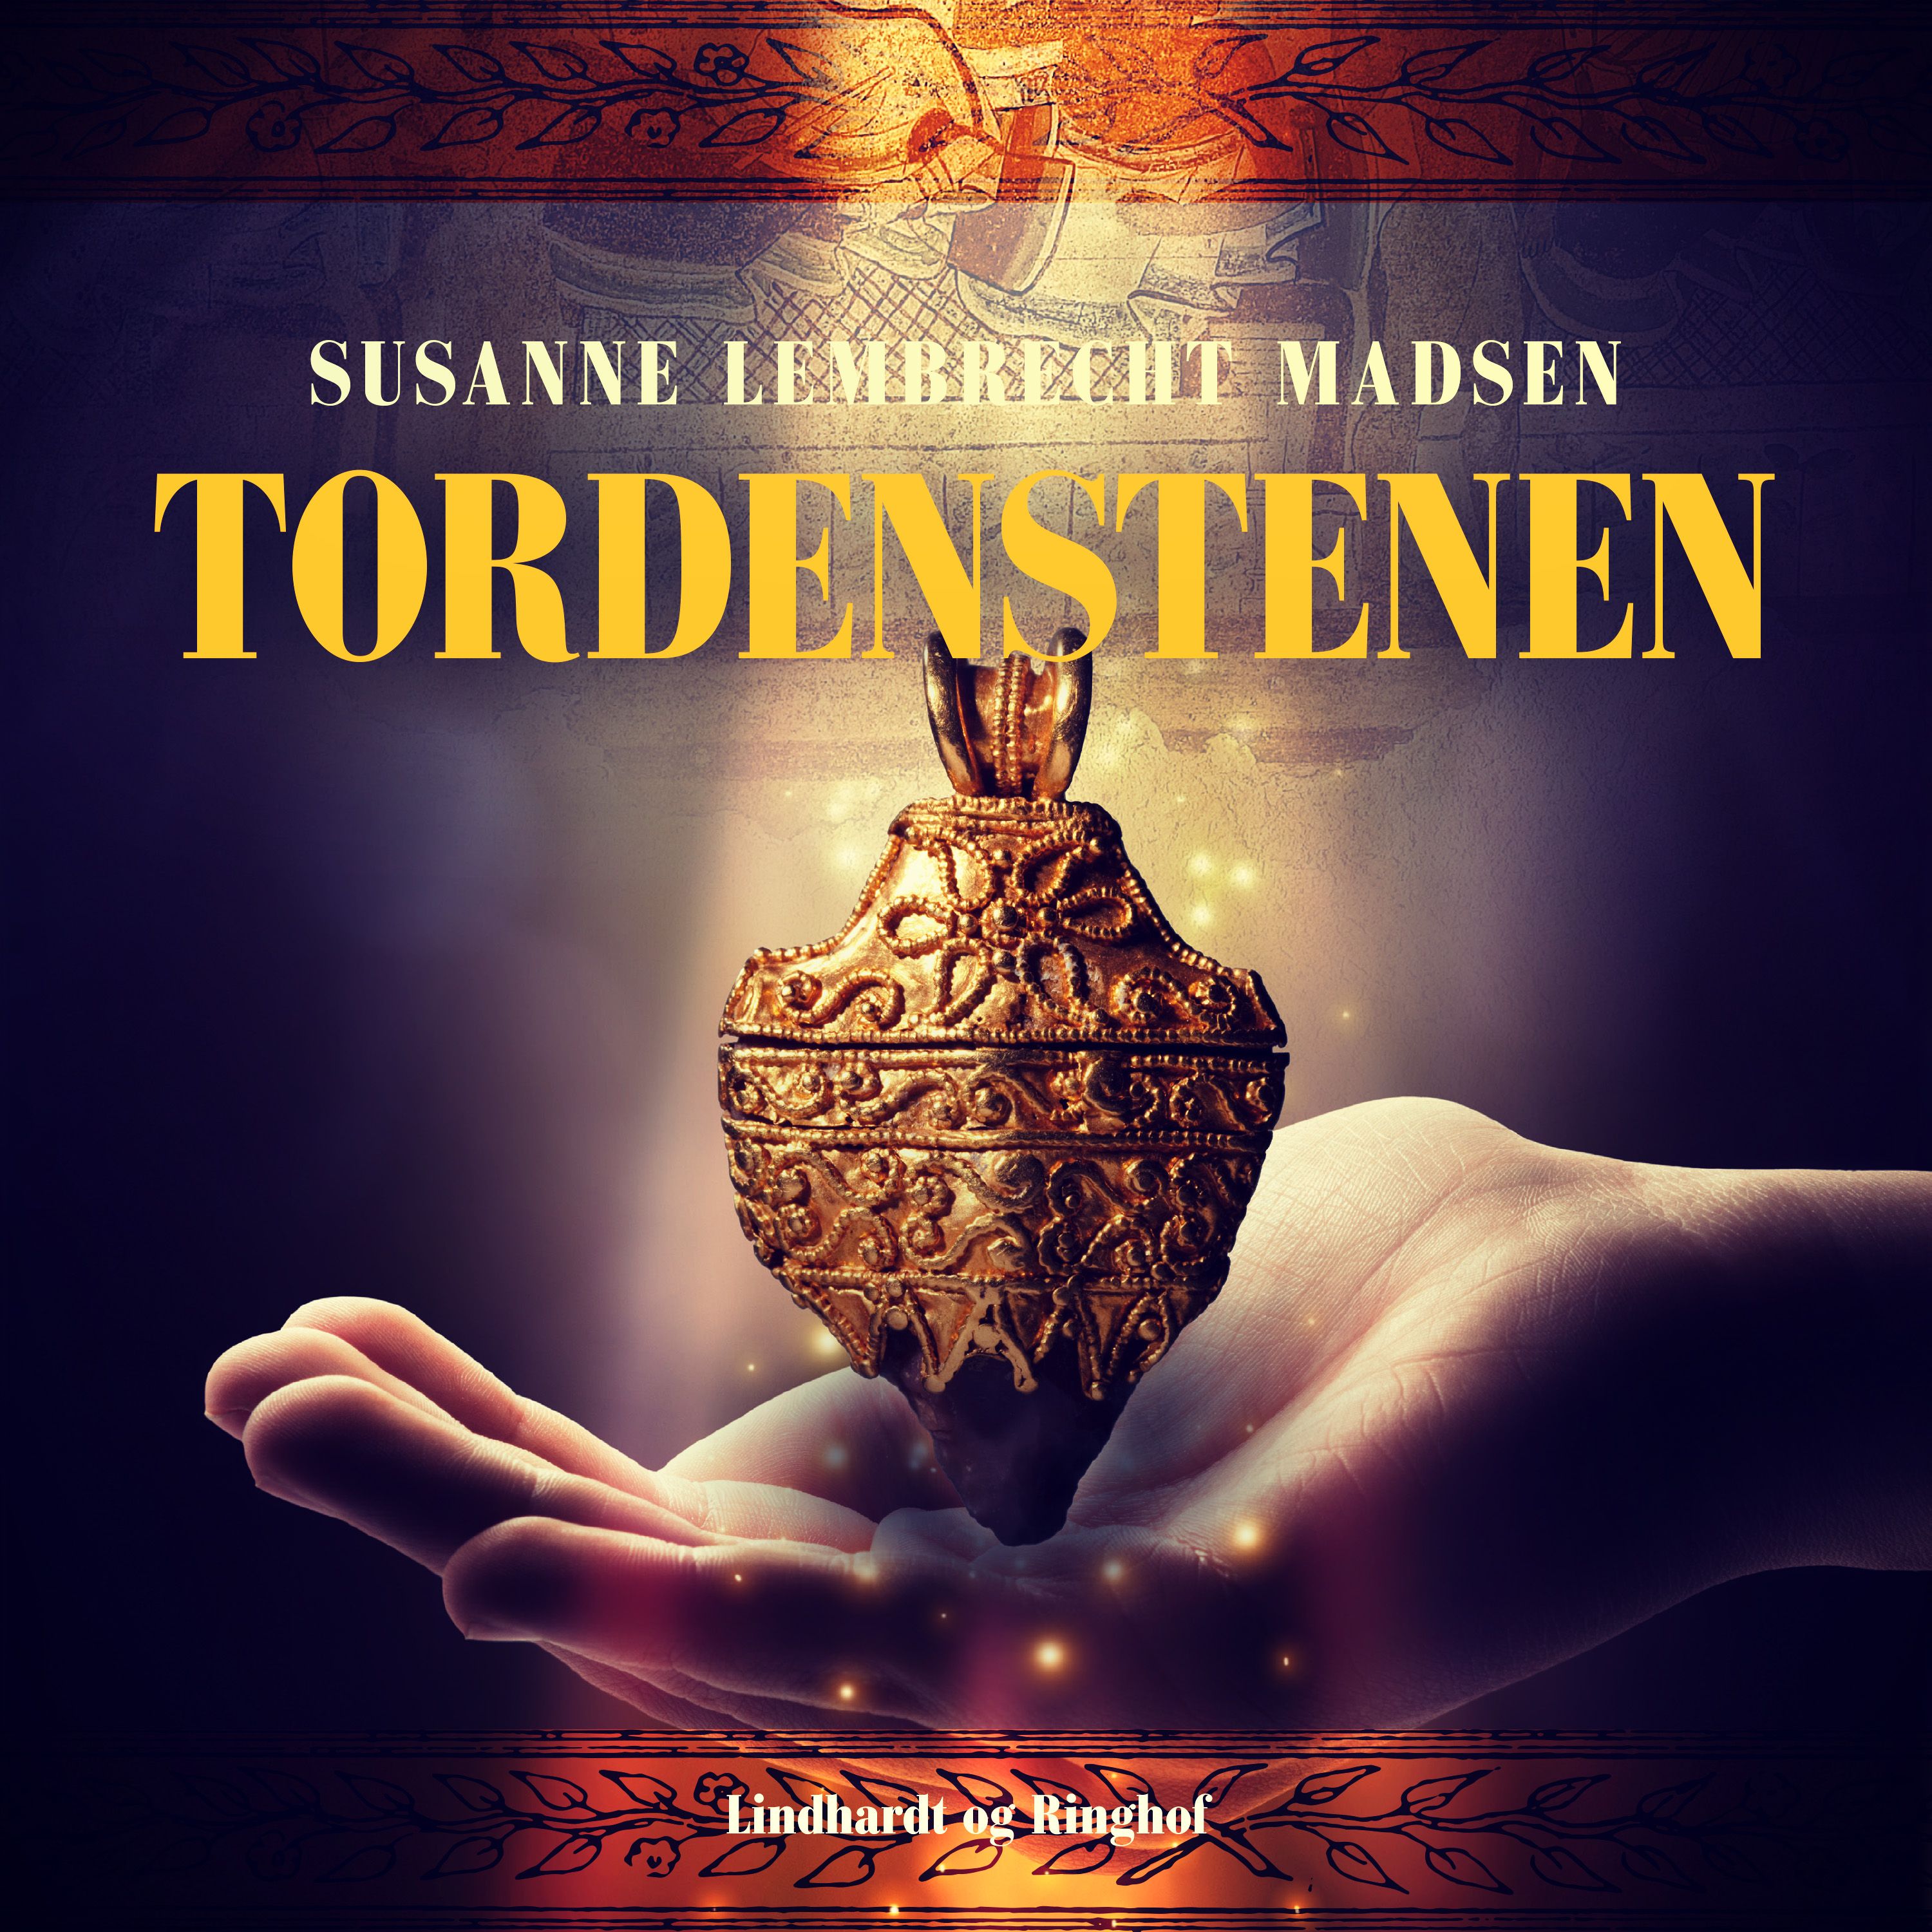 Tordenstenen, ljudbok av Susanne Lembrecht Madsen